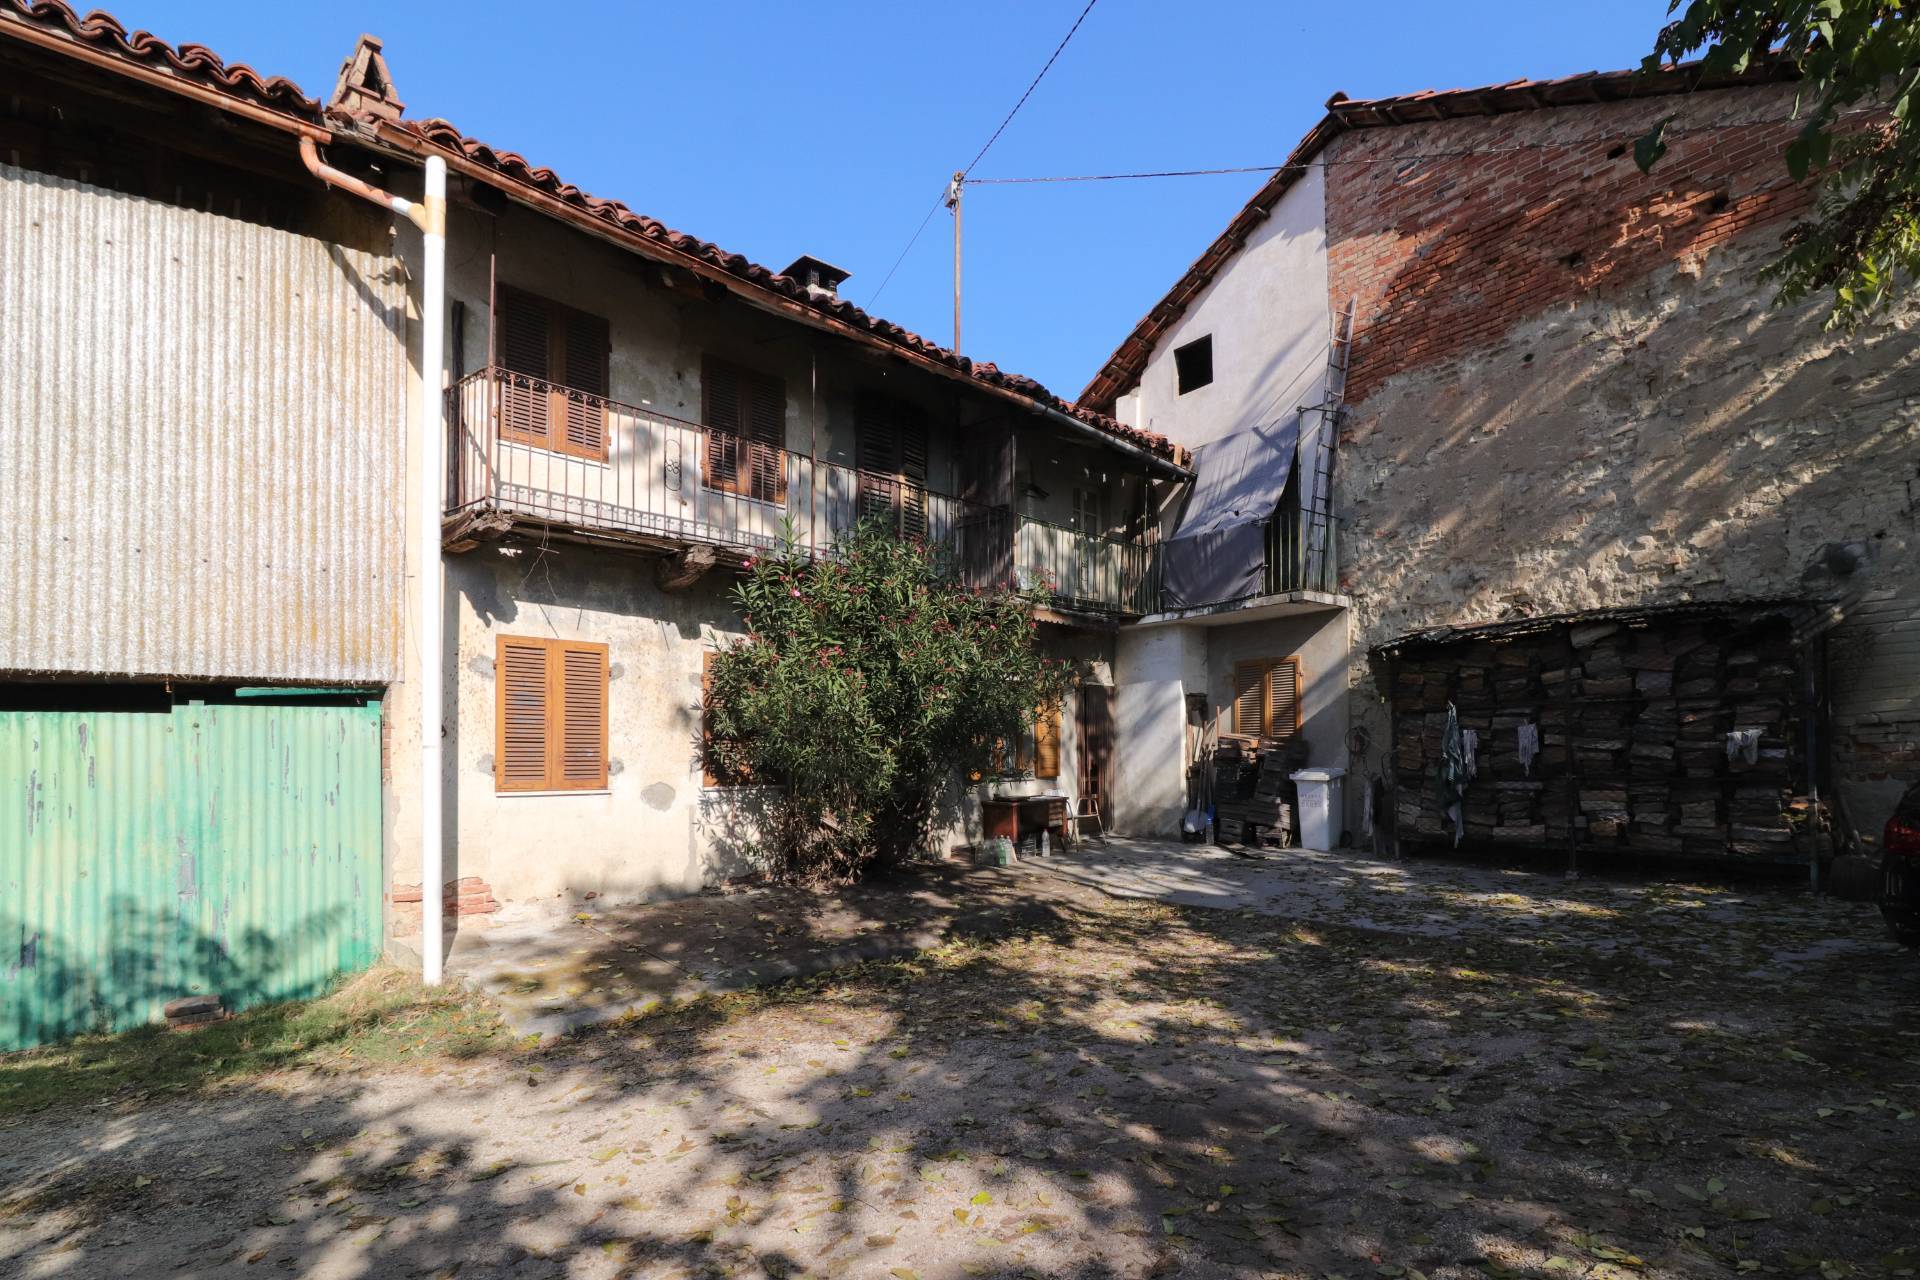 Rustico / Casale in vendita a Montaldo Roero, 2 locali, prezzo € 20.000 | PortaleAgenzieImmobiliari.it